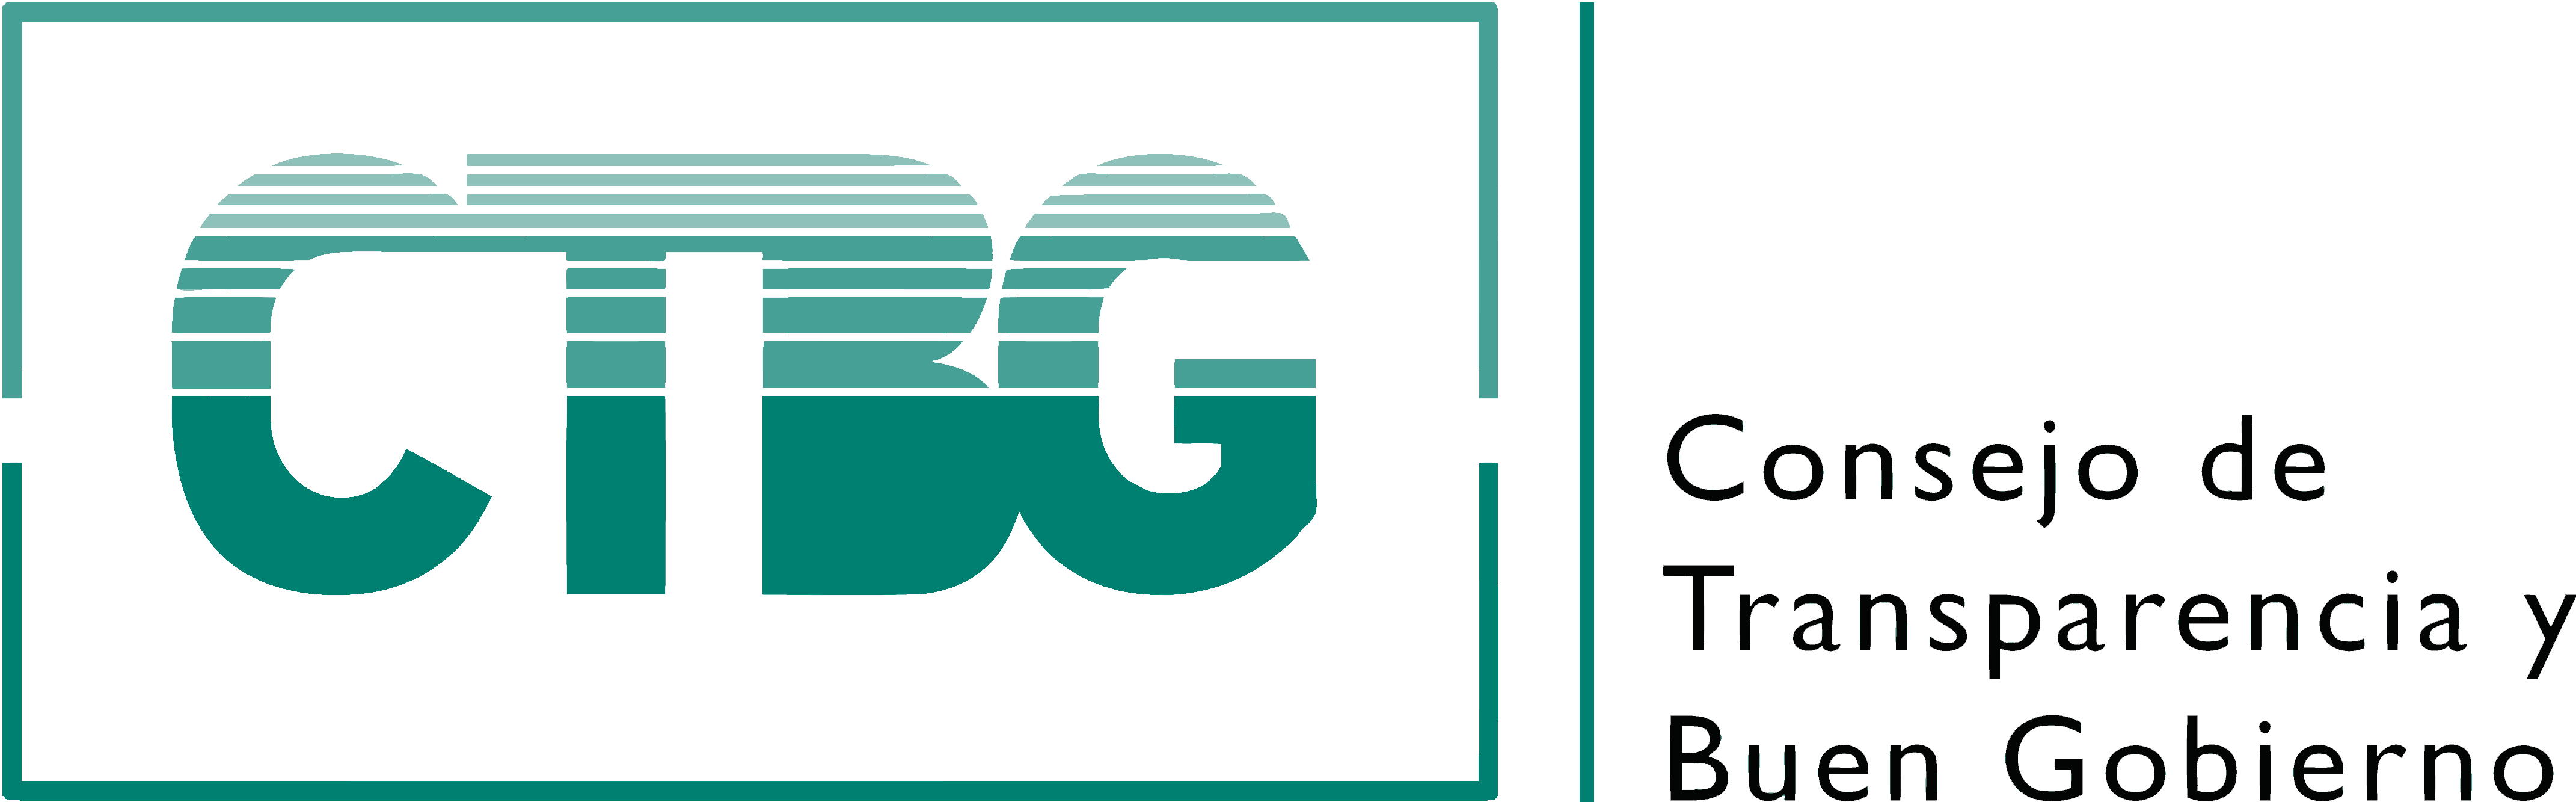 logo del Consejo de Transparencia y Buen Gobierno